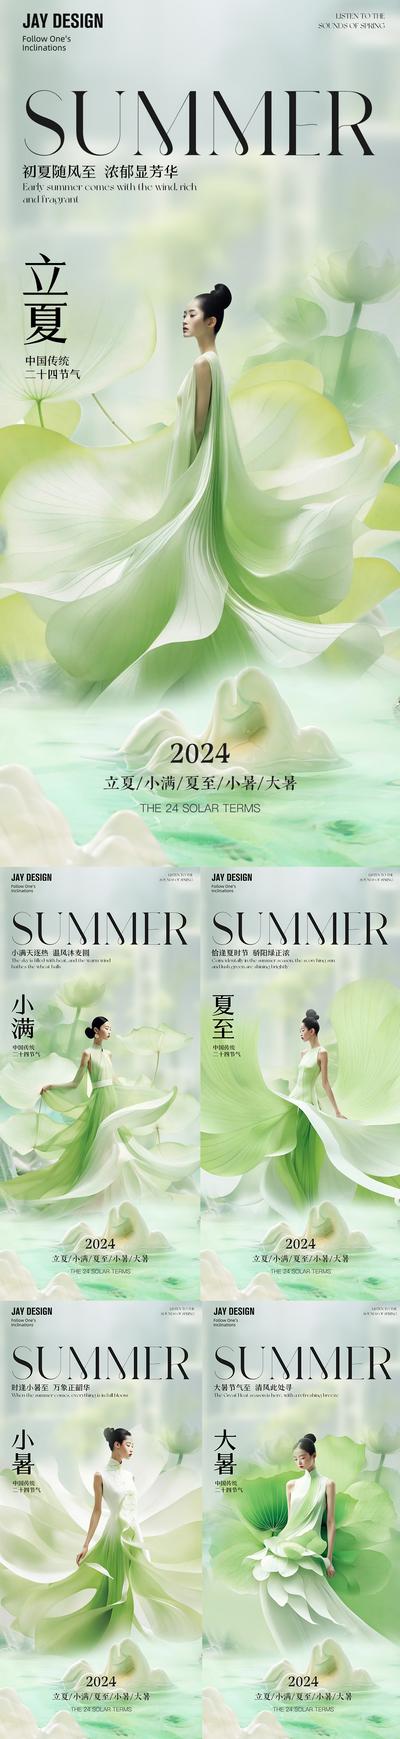 南门网 广告 海报 地产 立夏 医美 节气 系列 小满 夏至 小暑 大暑 AI 唯美 二十四节气